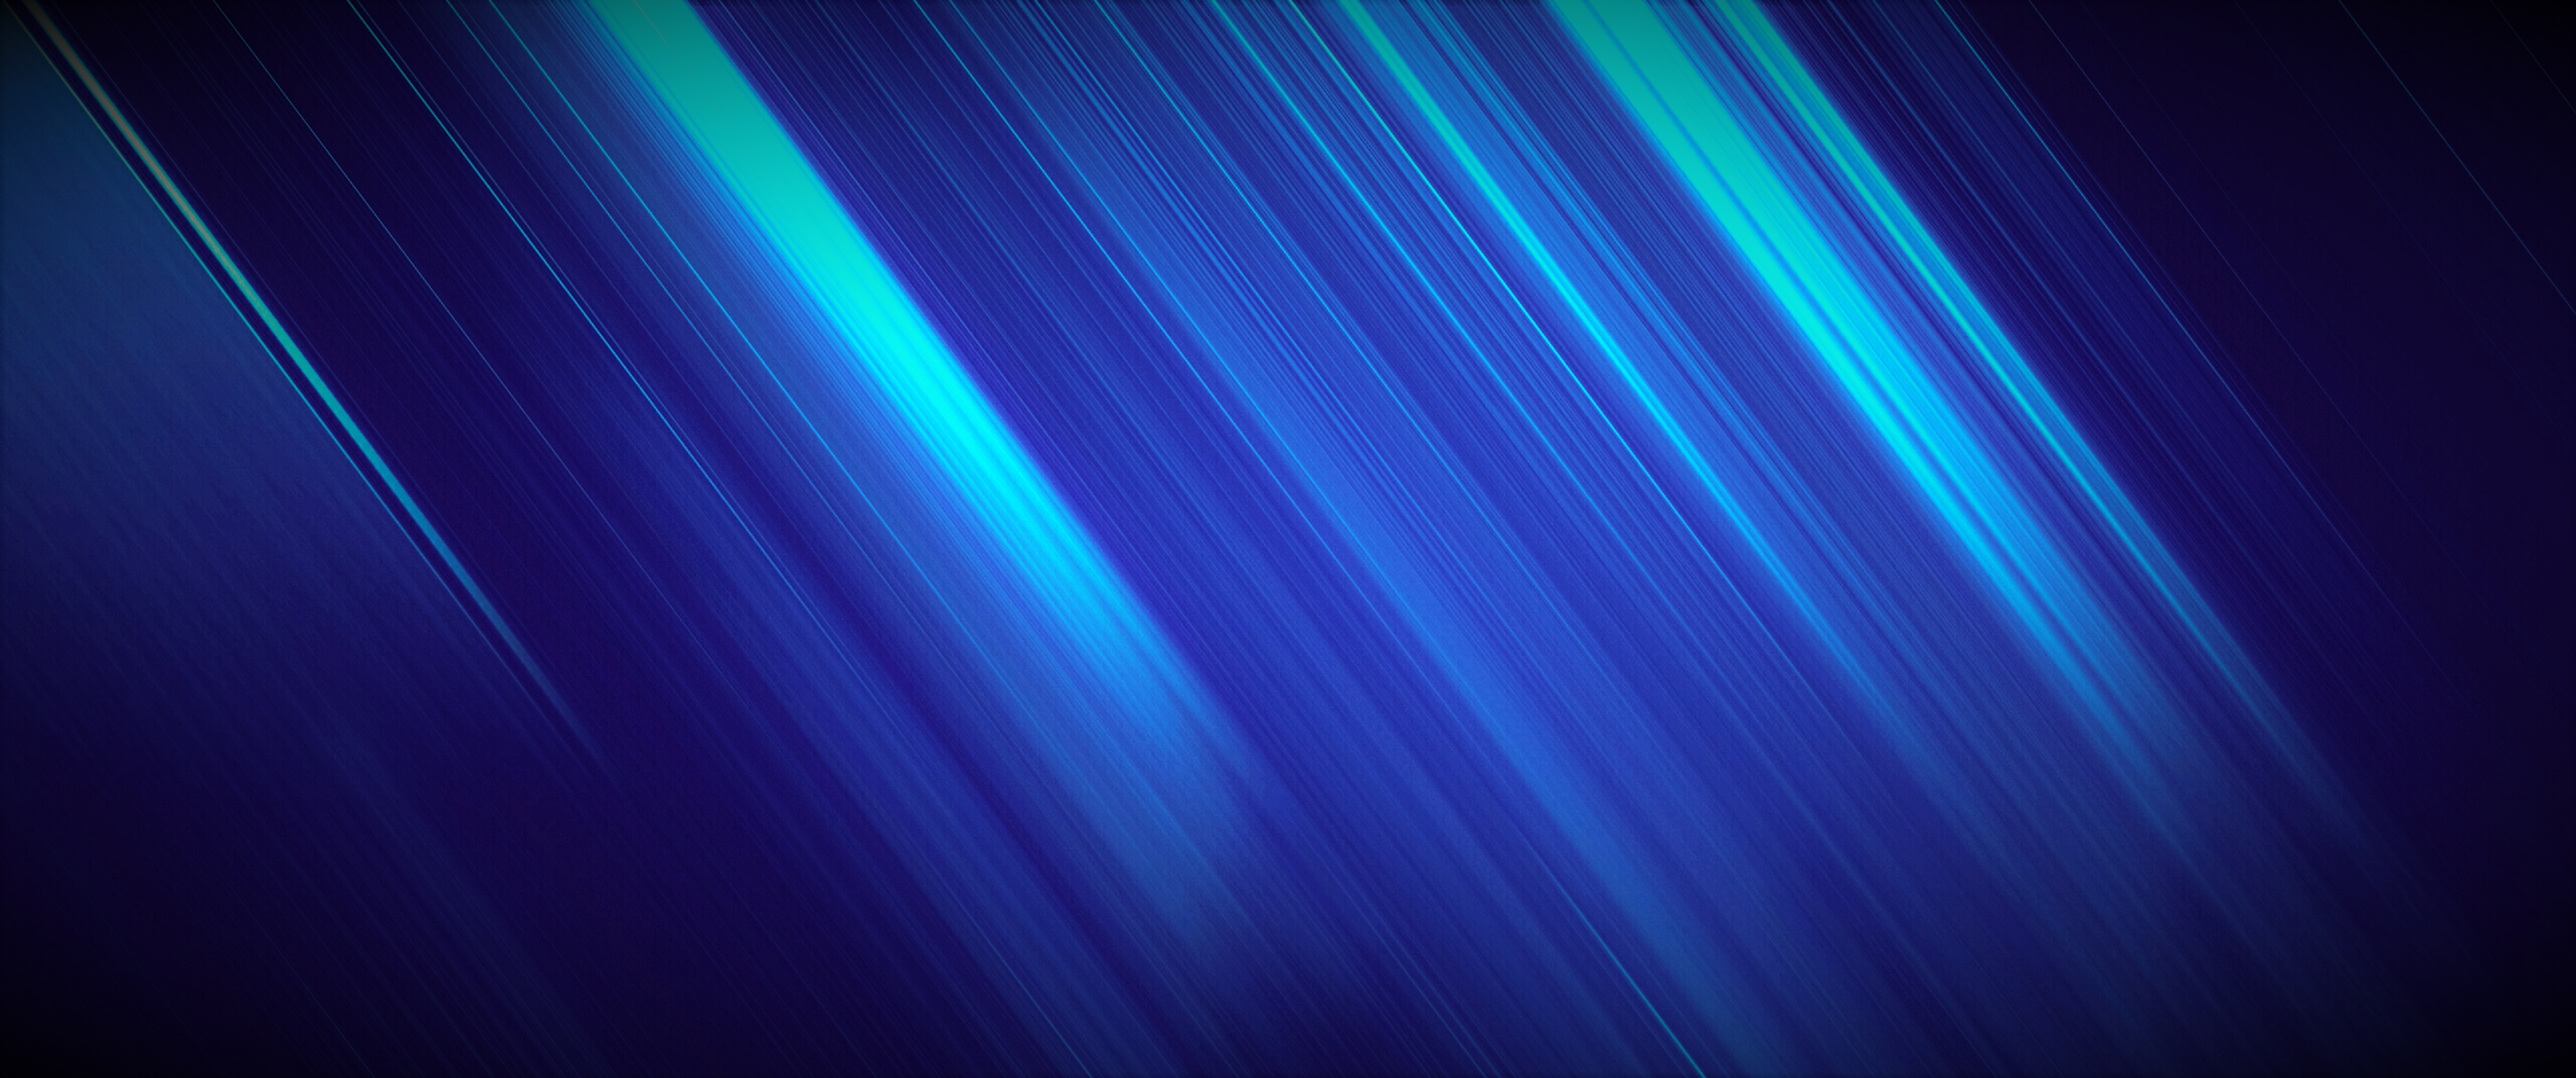 fondo de pantalla 1336x768,azul,verde,ligero,azul eléctrico,turquesa